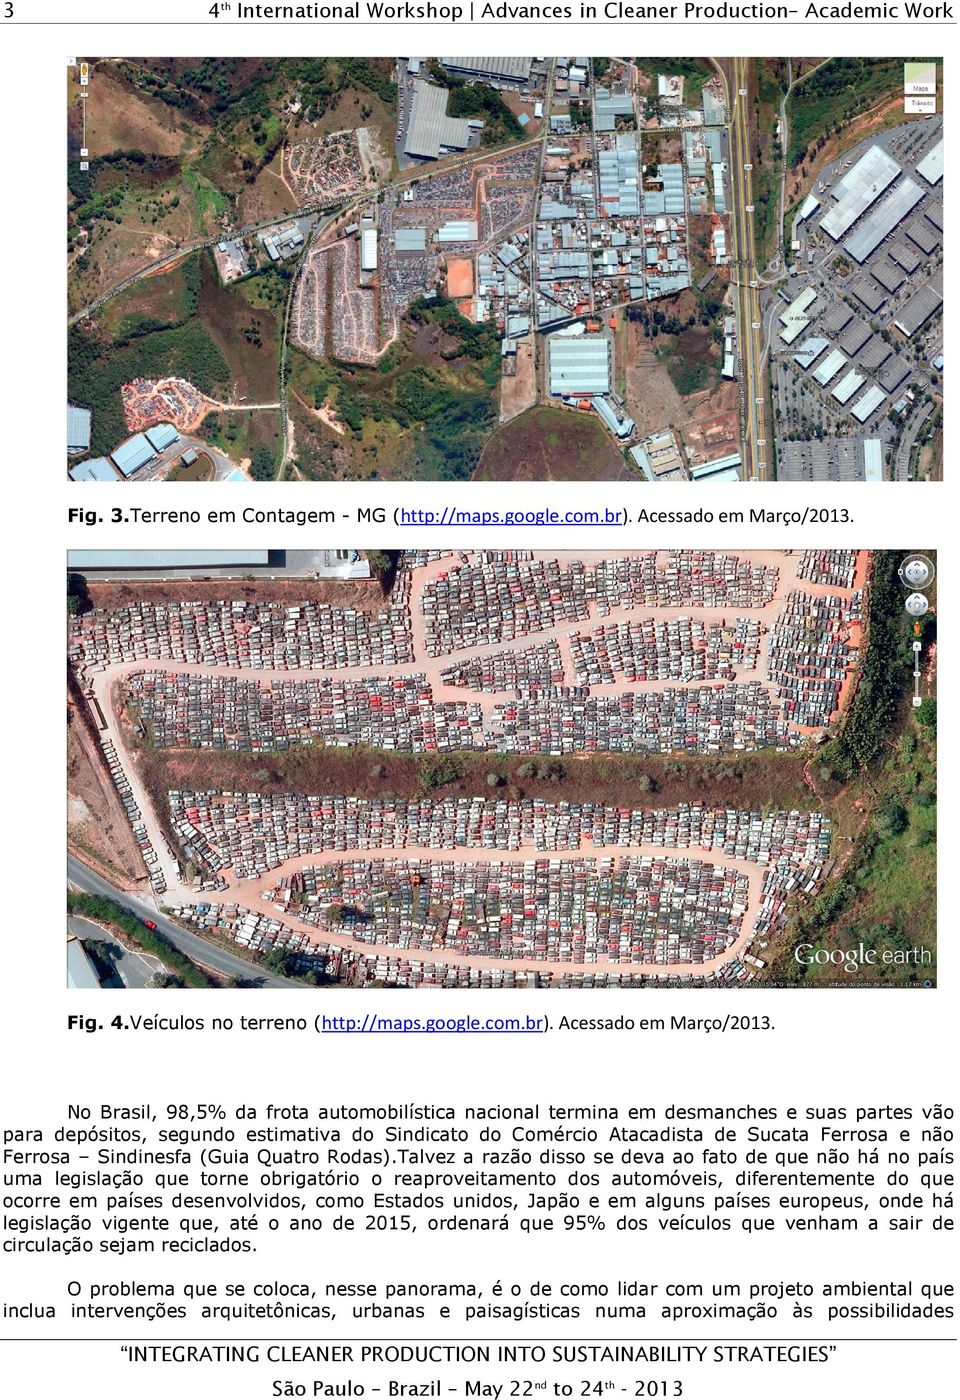 No Brasil, 98,5% da frota automobilística nacional termina em desmanches e suas partes vão para depósitos, segundo estimativa do Sindicato do Comércio Atacadista de Sucata Ferrosa e não Ferrosa